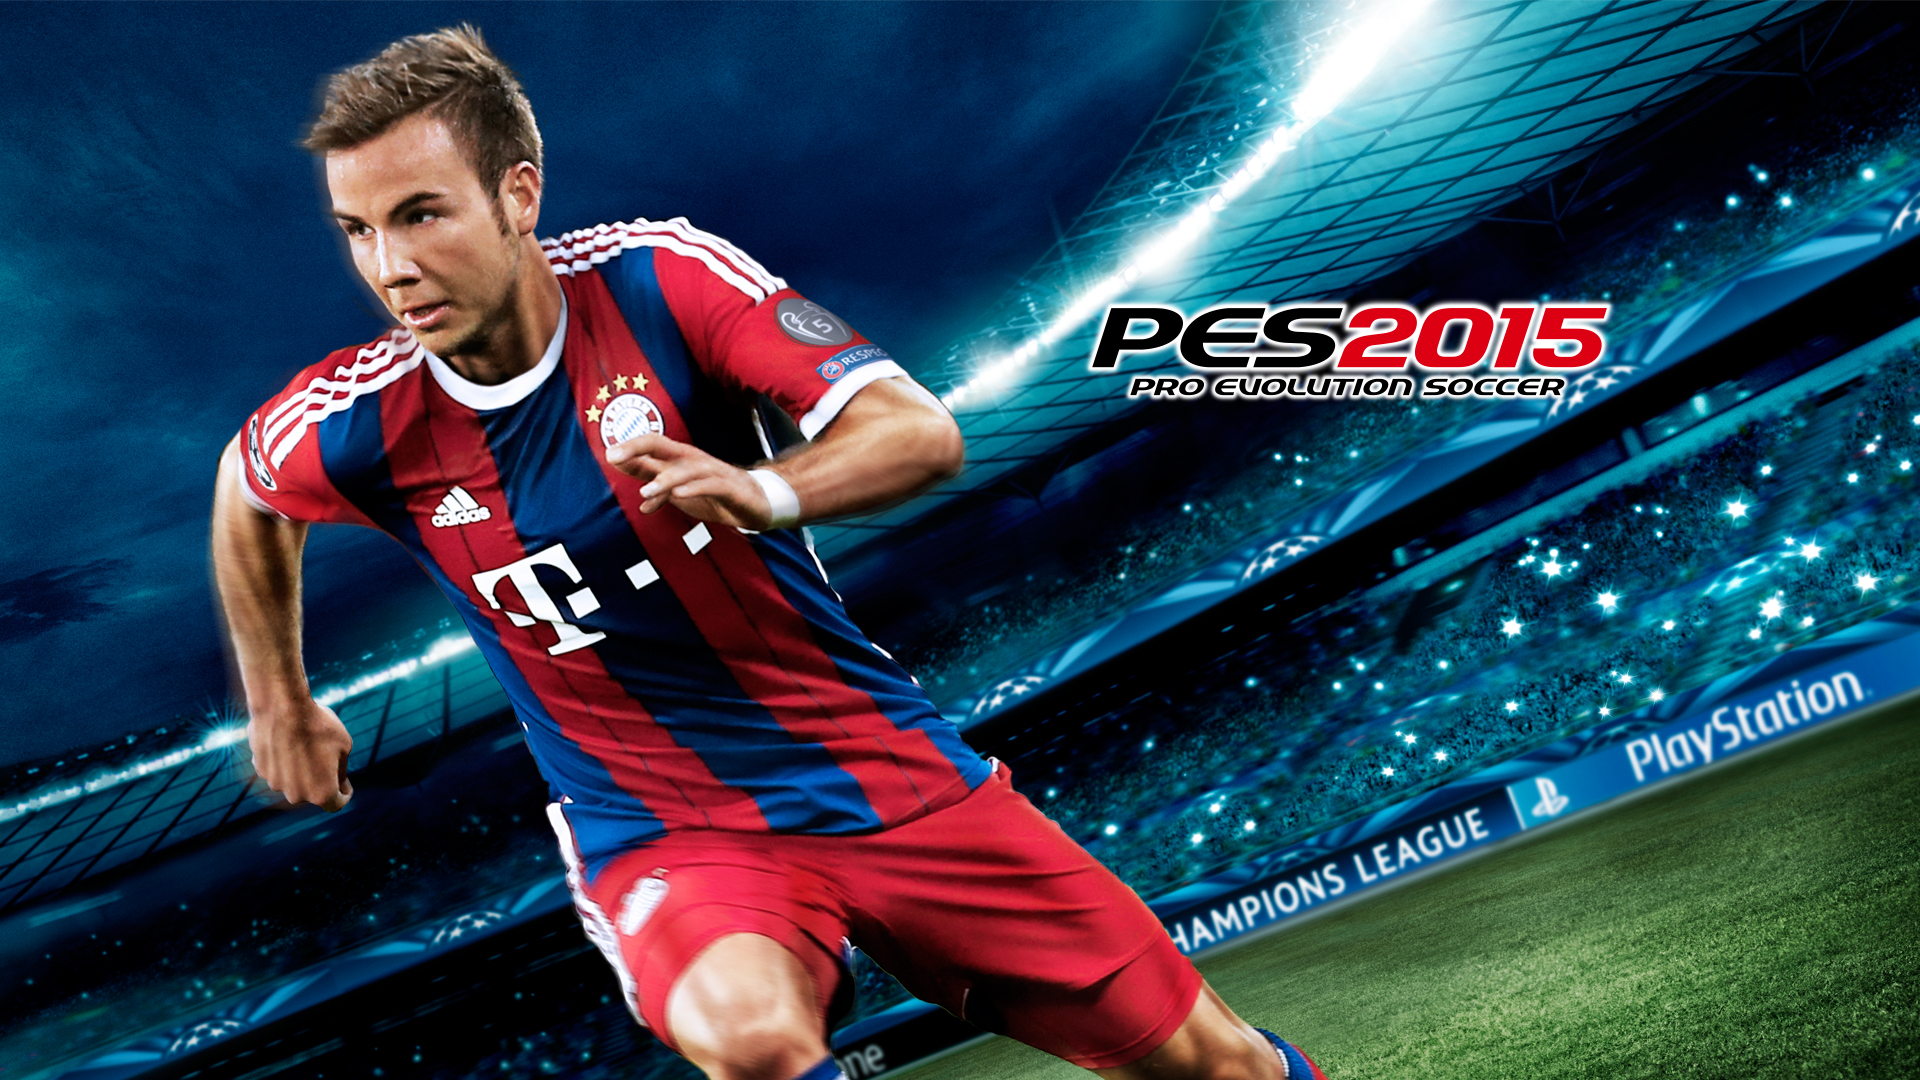 2015. PES 2015. Pro Evolution Soccer 2015. Pro Evolution Soccer 2015 обложка. PES 15 обложка.